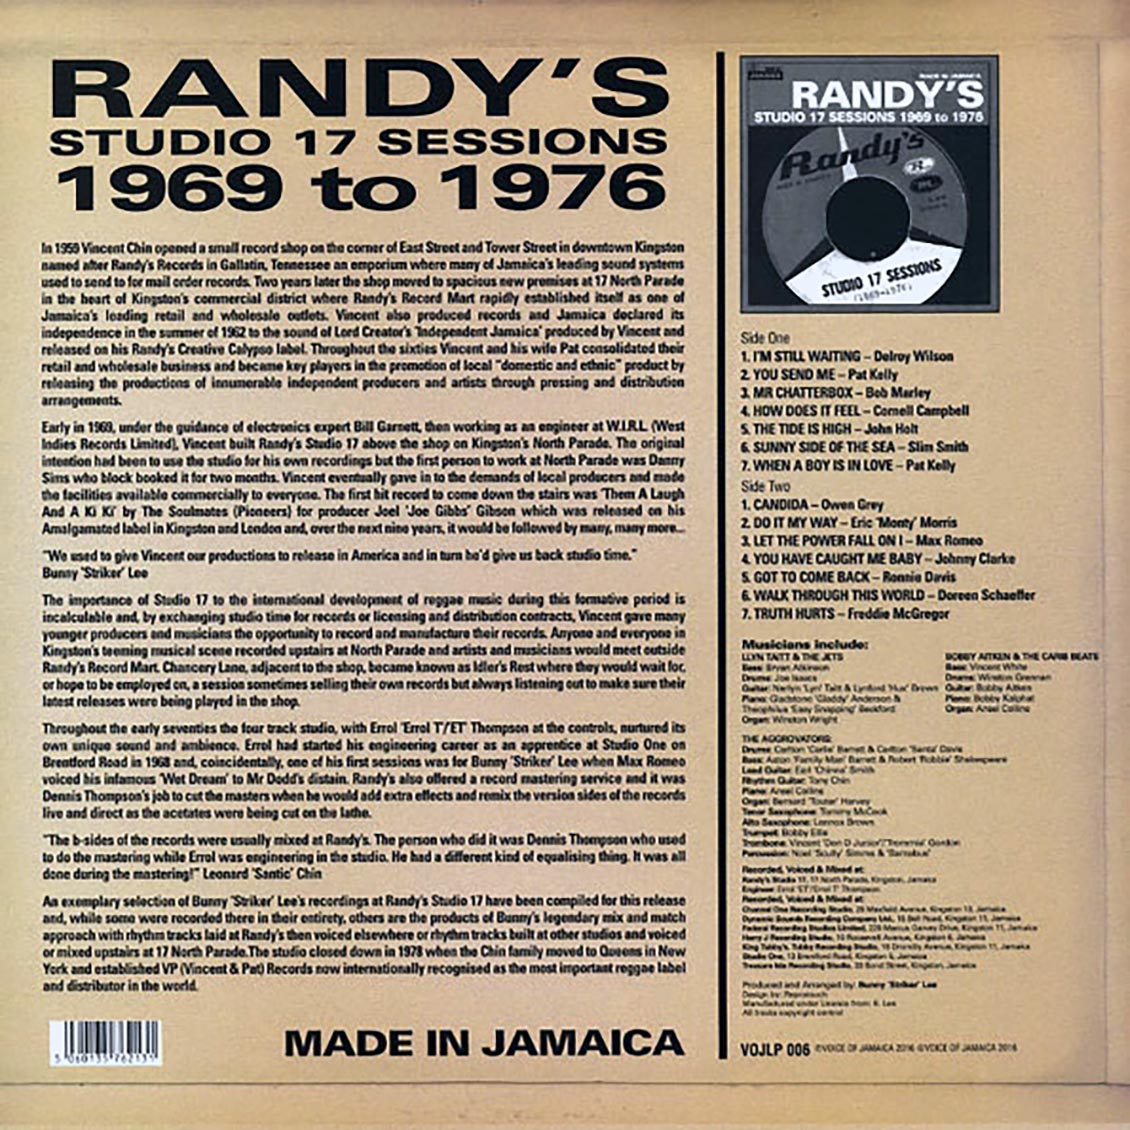 1969-1976 랜디스 스튜디오 17 세션 모음 (Randy's Studio 17 Sessions 1969 to 1976) [LP] 